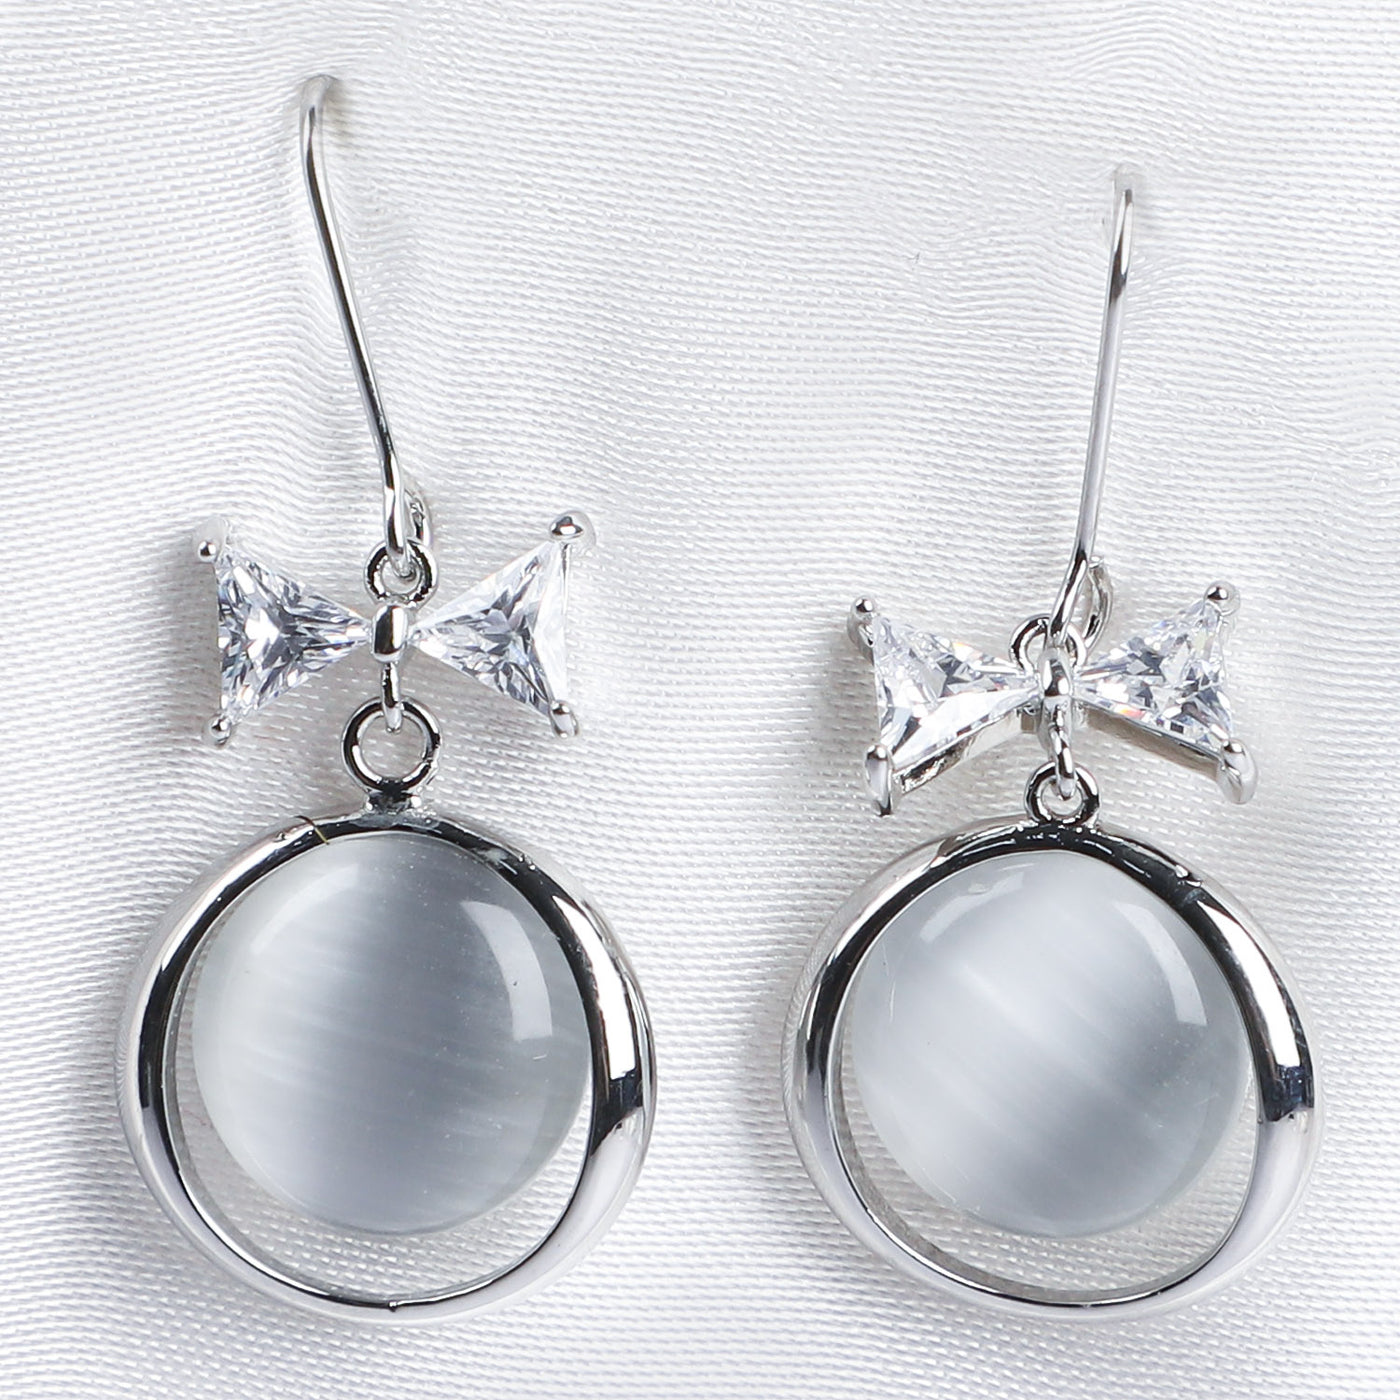 Jewelry Earrings for Girls